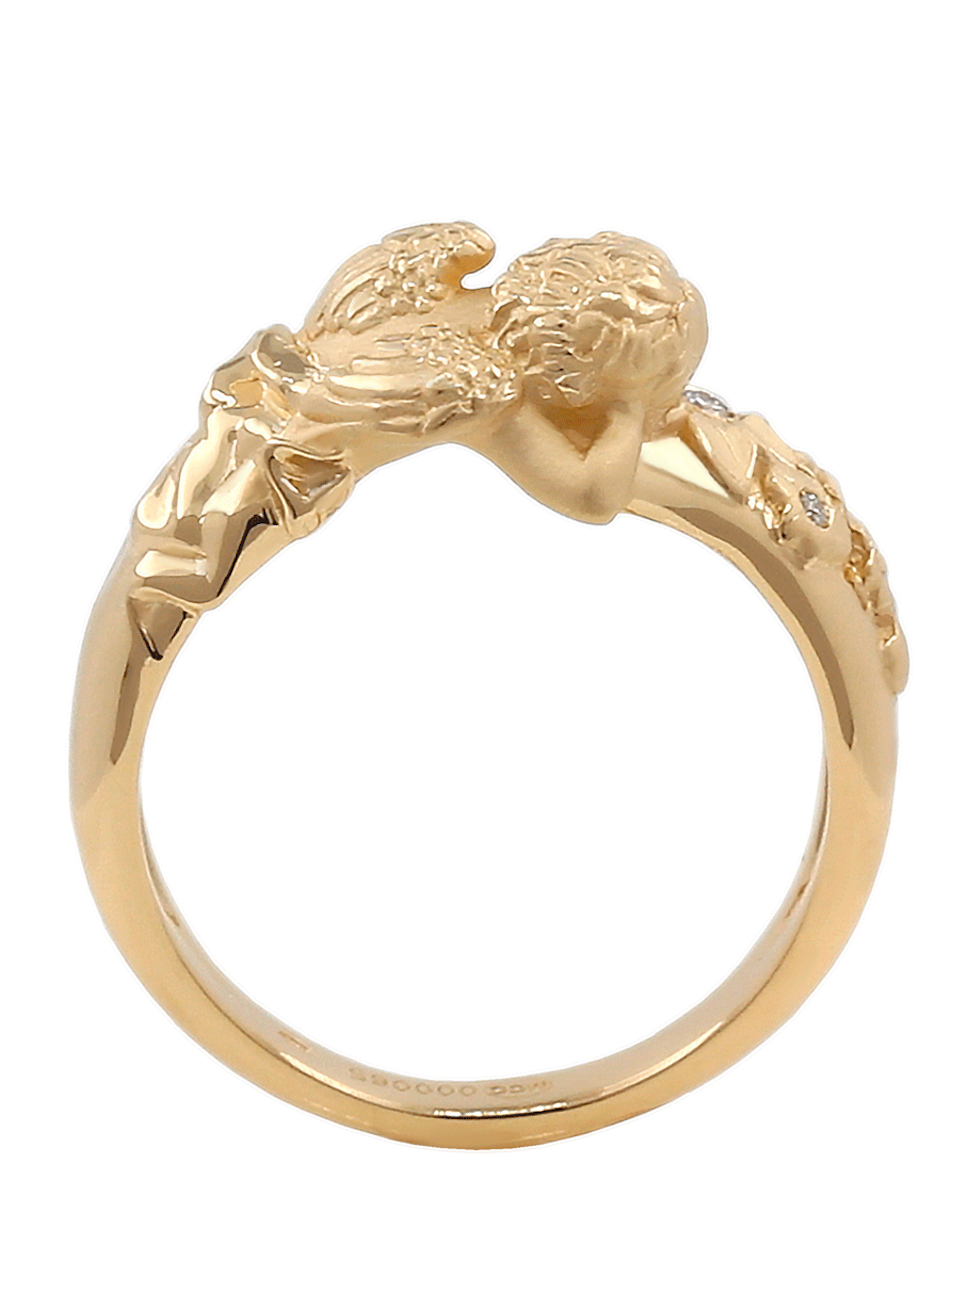 Gold Ring “ANGELS” - Manuel Carrera Cordon